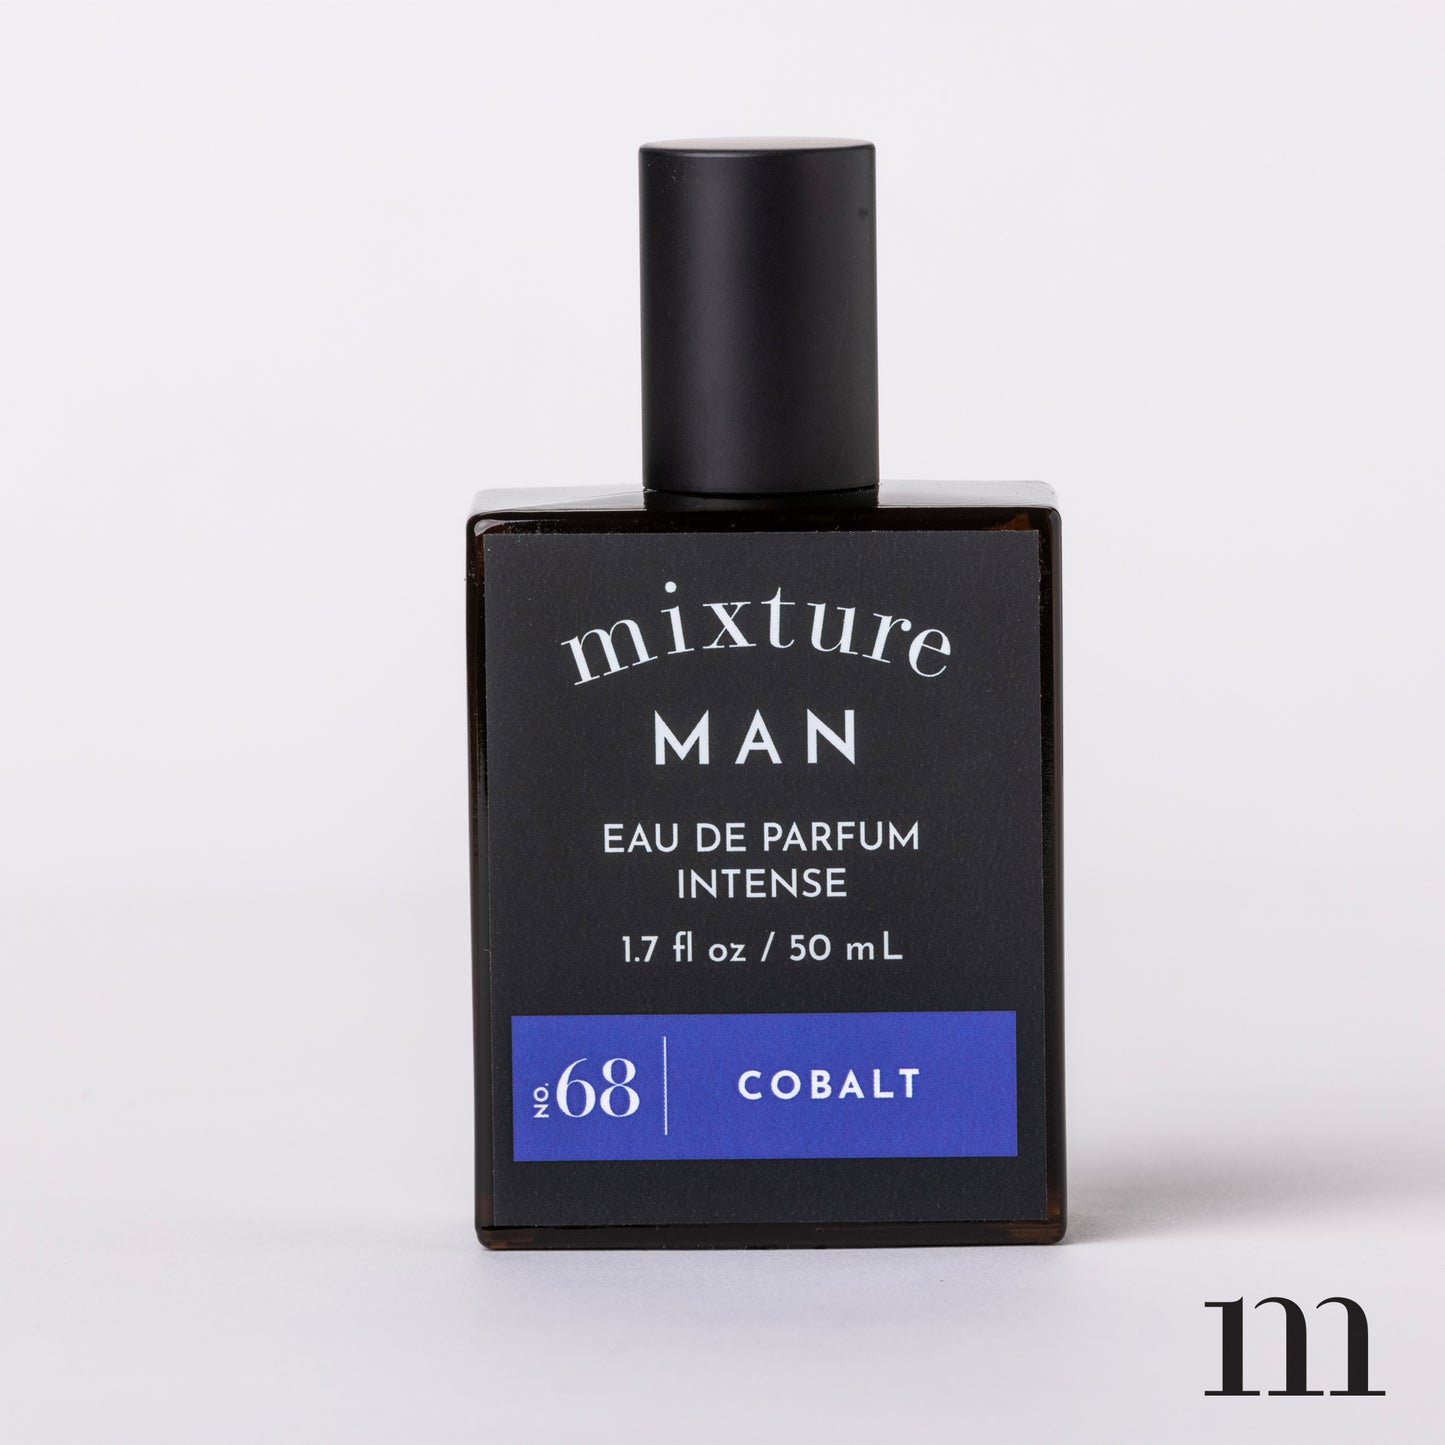 Mixture Man 1.7oz Eau de Parfum Intense